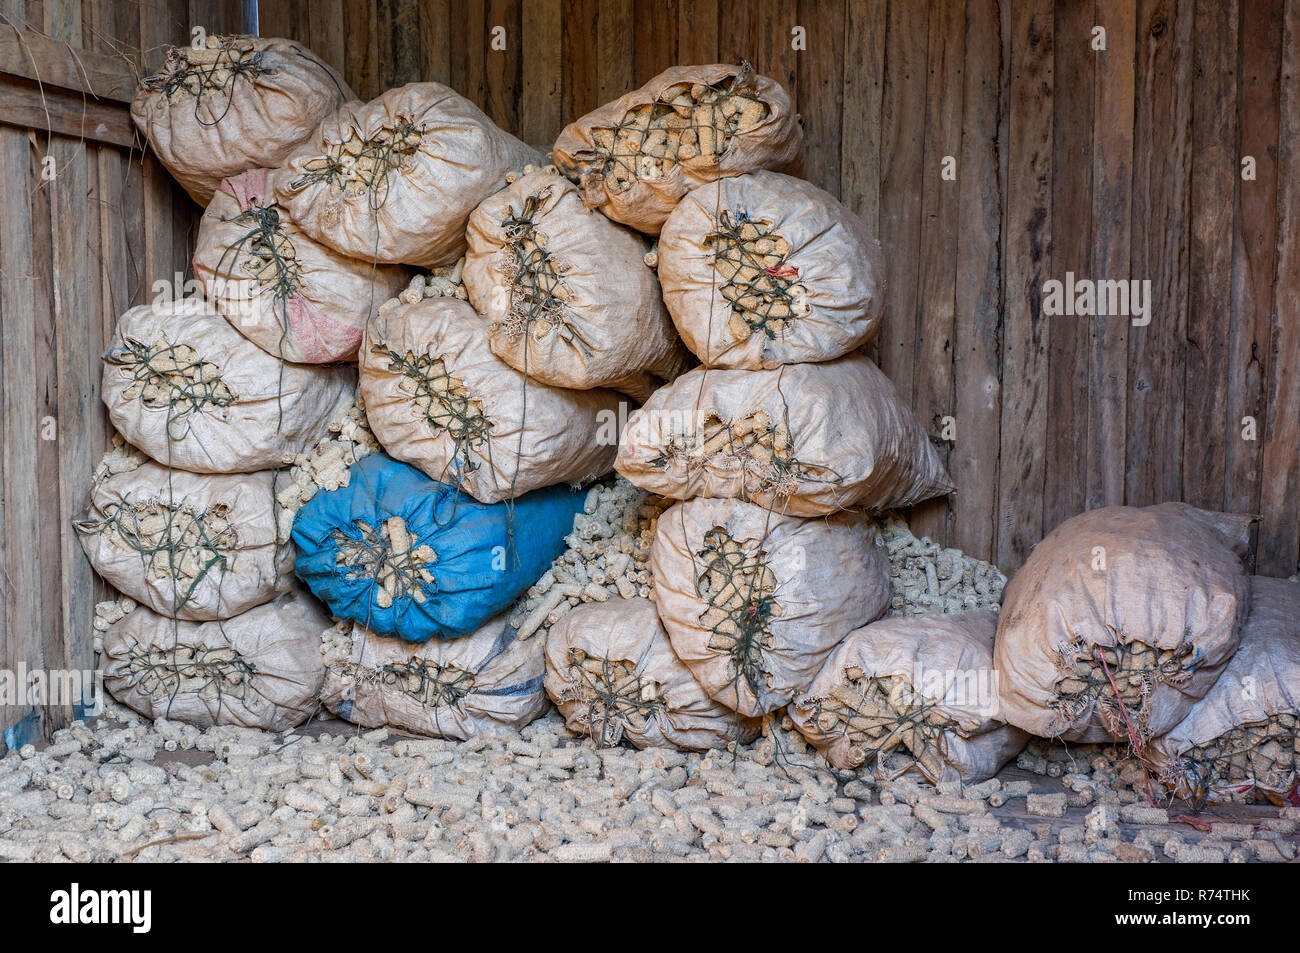 Sac rafle de l'agriculture / sac d'engrais de pile de tiges de maïs dans la basse-cour de la récolte agricole moulin à maïs Banque D'Images